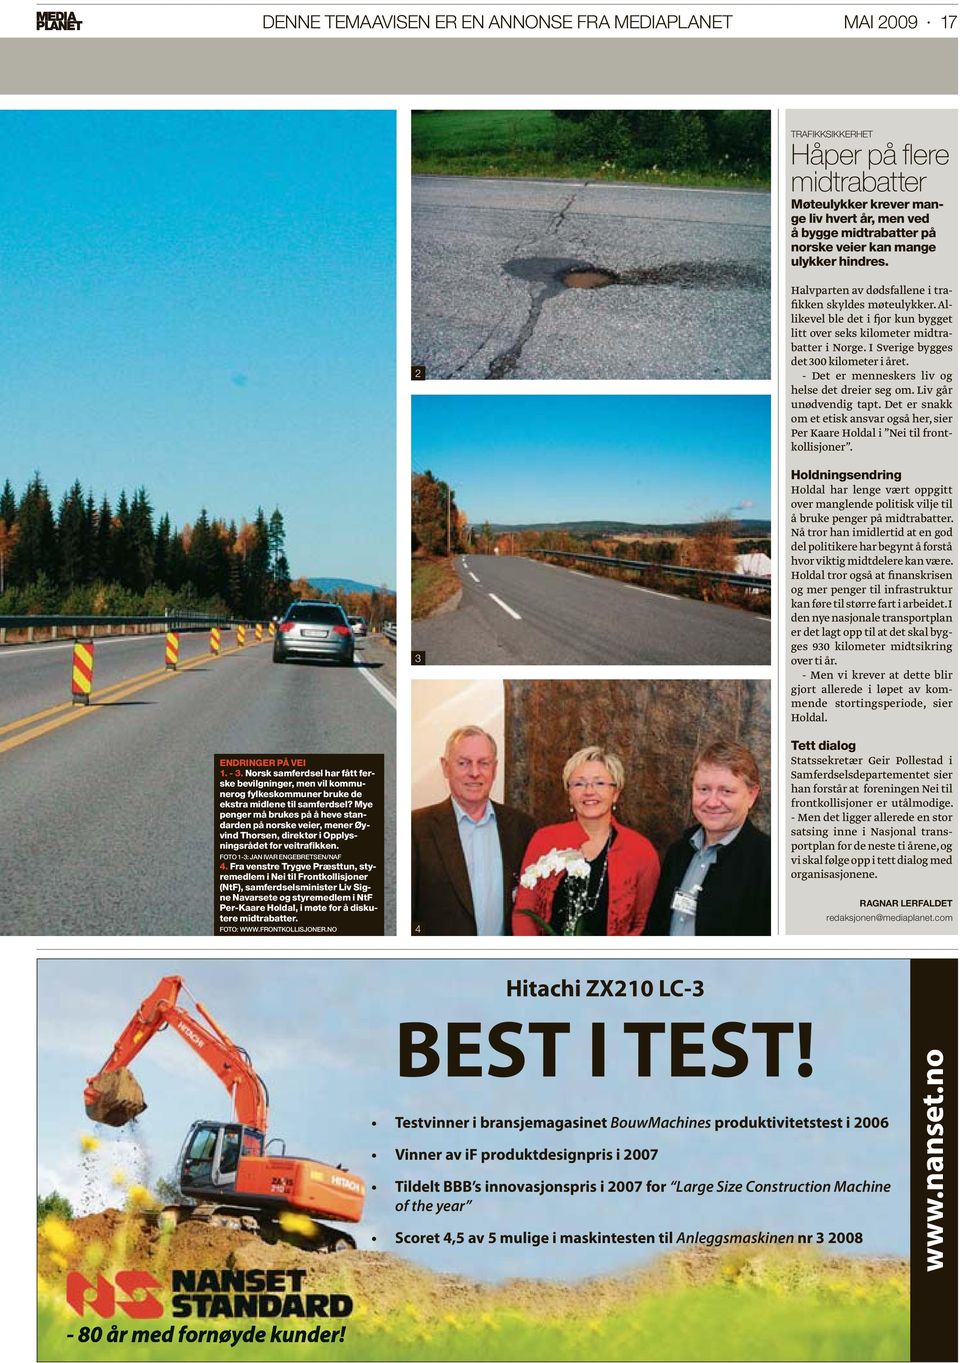 Mye penger må brukes på å heve standarden på norske veier, mener Øyvind Thorsen, direktør i Opplysningsrådet for veitrafikken. FOTO 1-3: JAN IVAR ENGEBRETSEN/NAF 4.